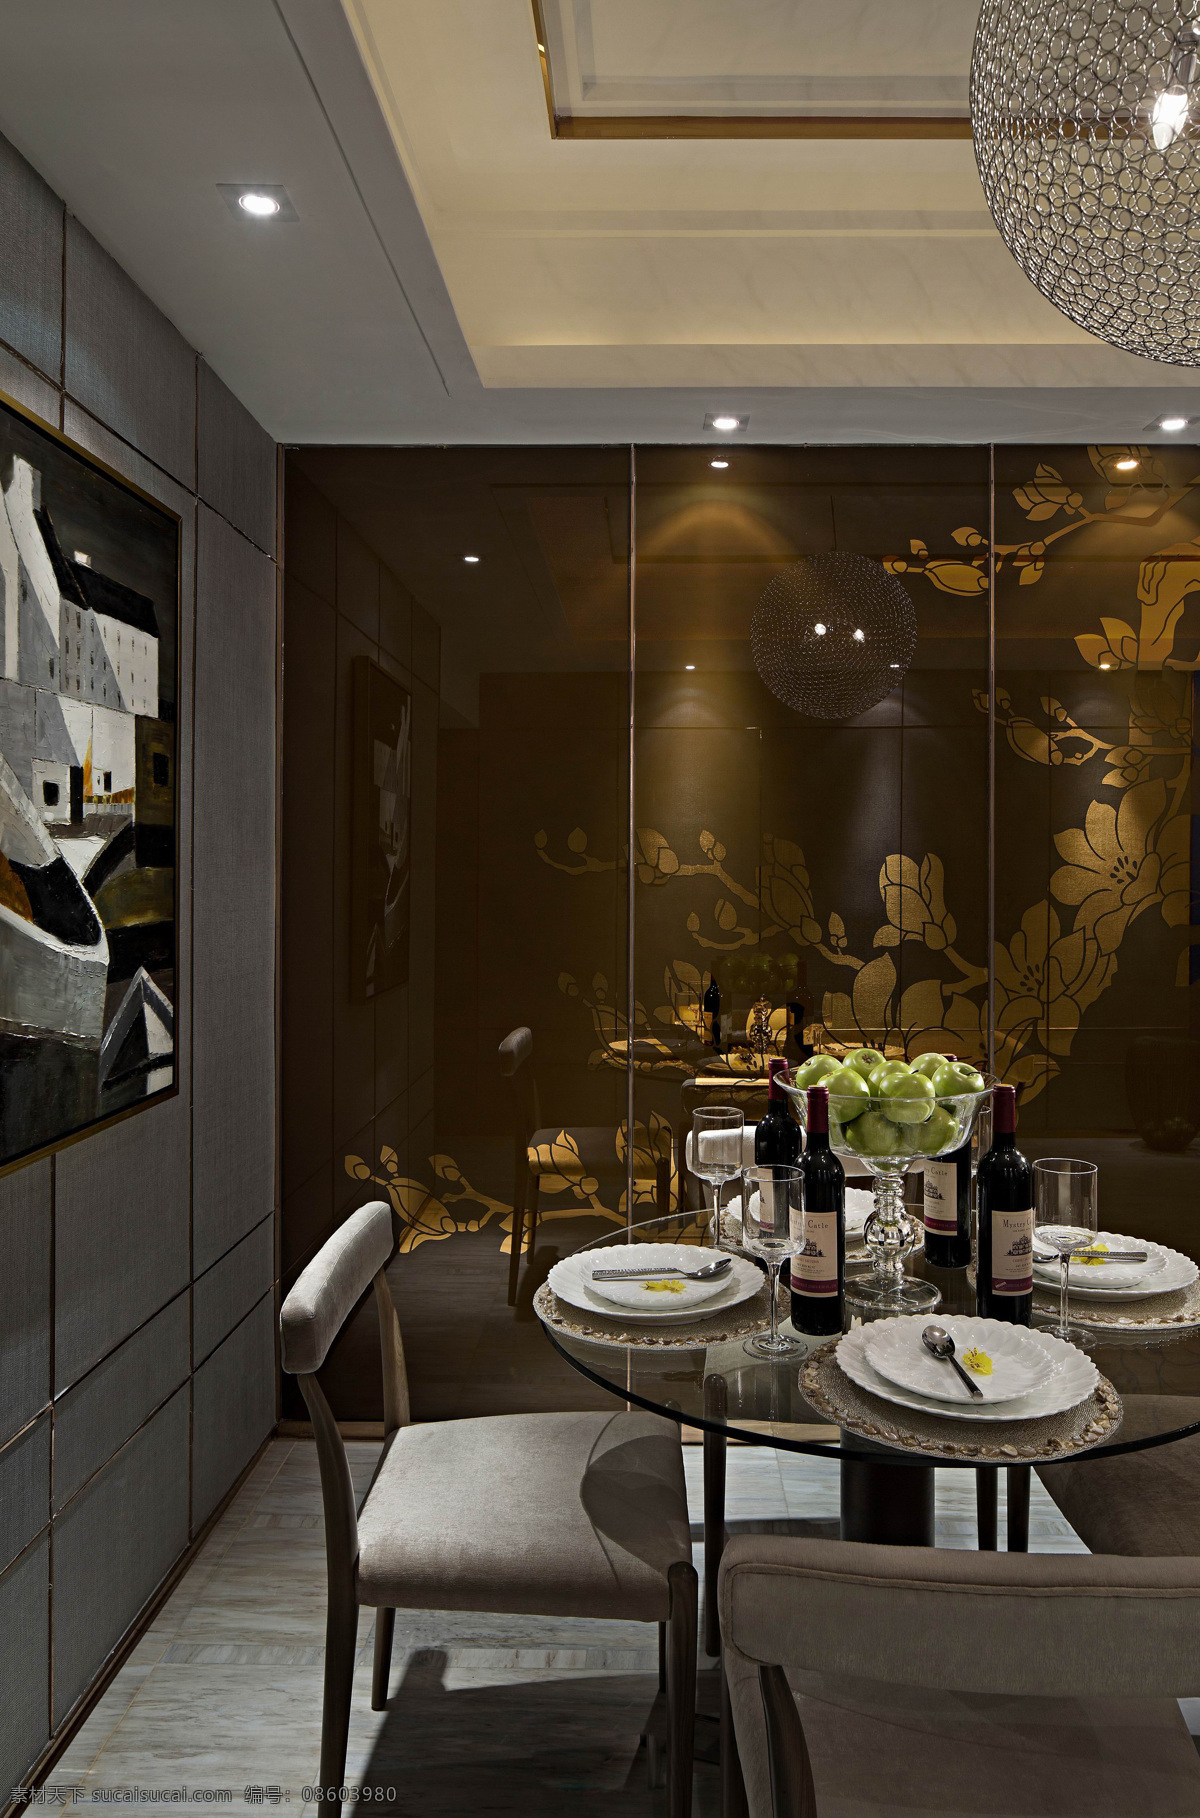 现代 简约 风 室内设计 餐厅 装饰画 效果图 餐桌 餐桌椅 餐具 家装